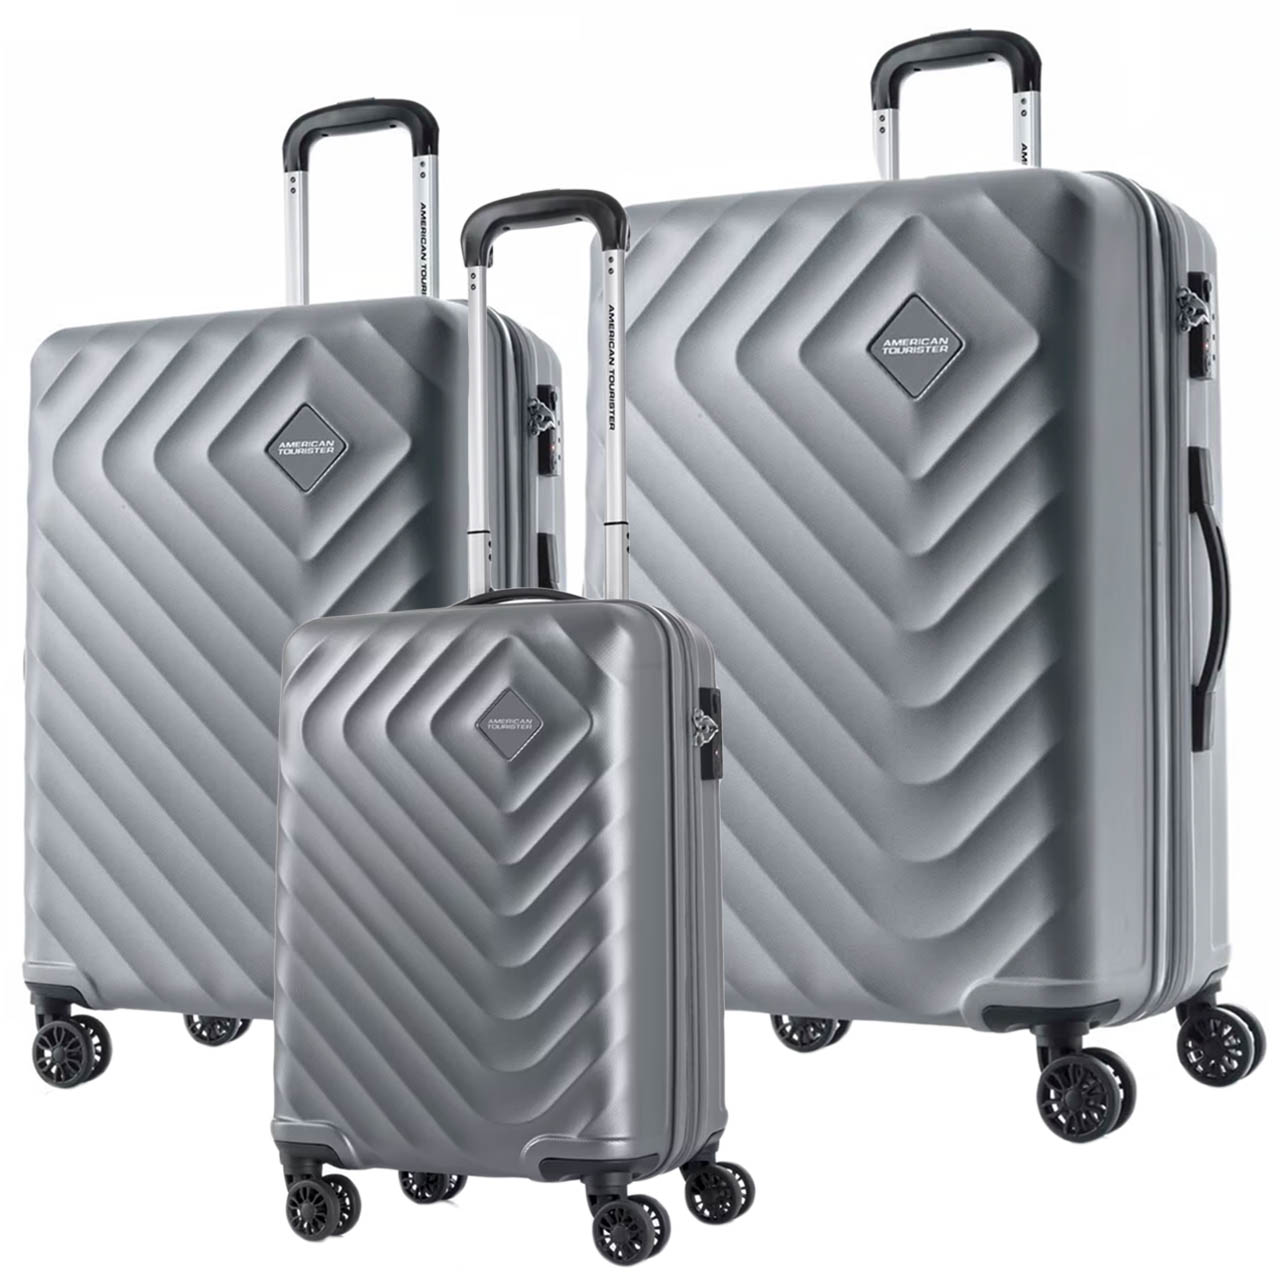 نکته خرید - قیمت روز مجموعه سه عددی چمدان امریکن توریستر مدل SENNA QC5 خرید